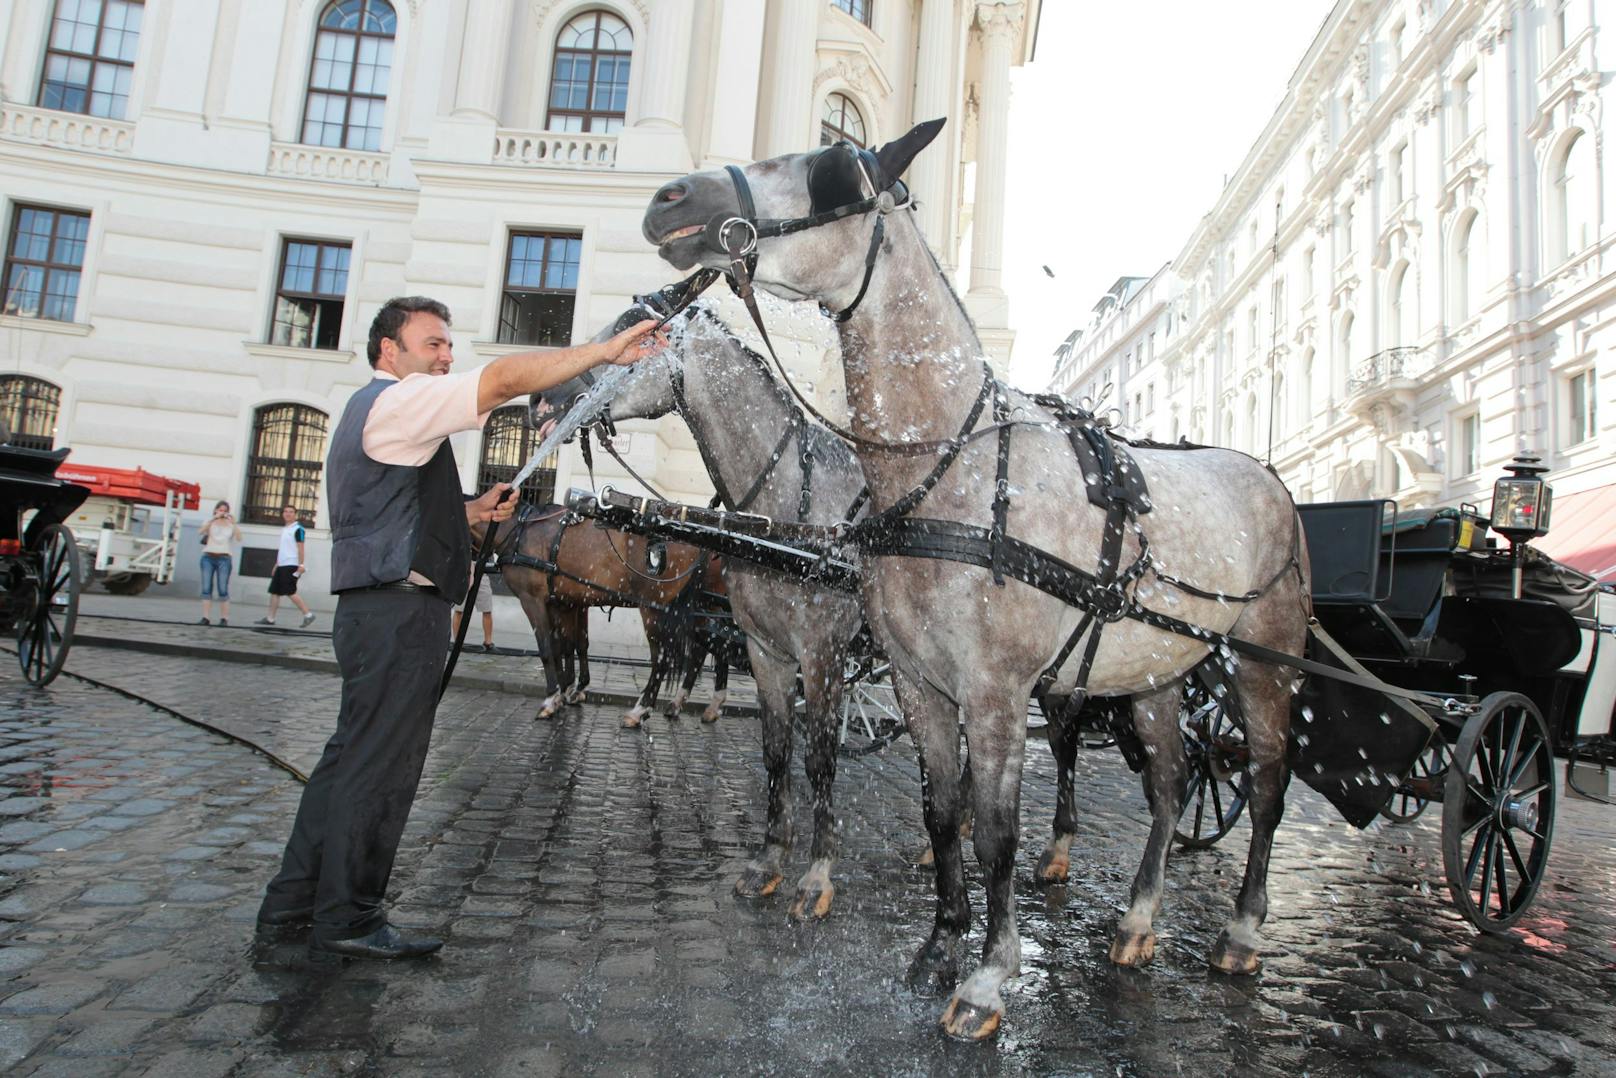 Die Fiaker-Pferde leiden unter der Hitze. Duschen mit kaltem Wasser sollen helfen.